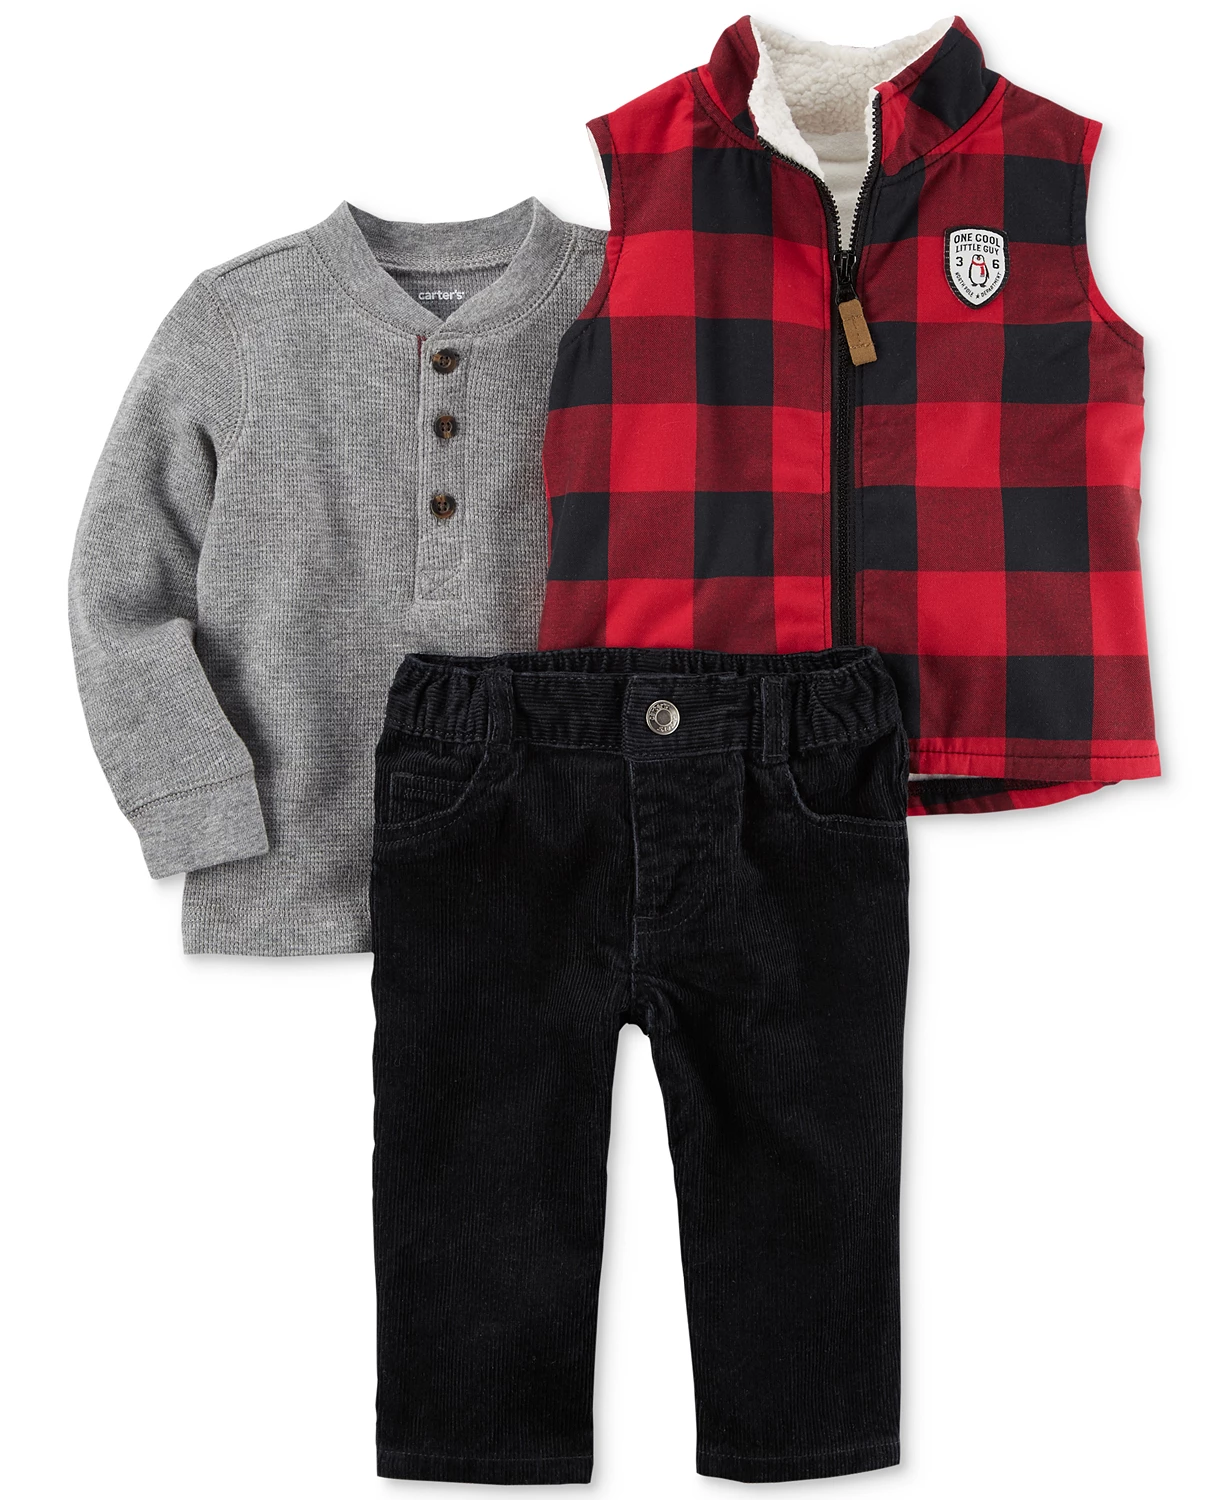 Baby Wholesale Clothing Maryland